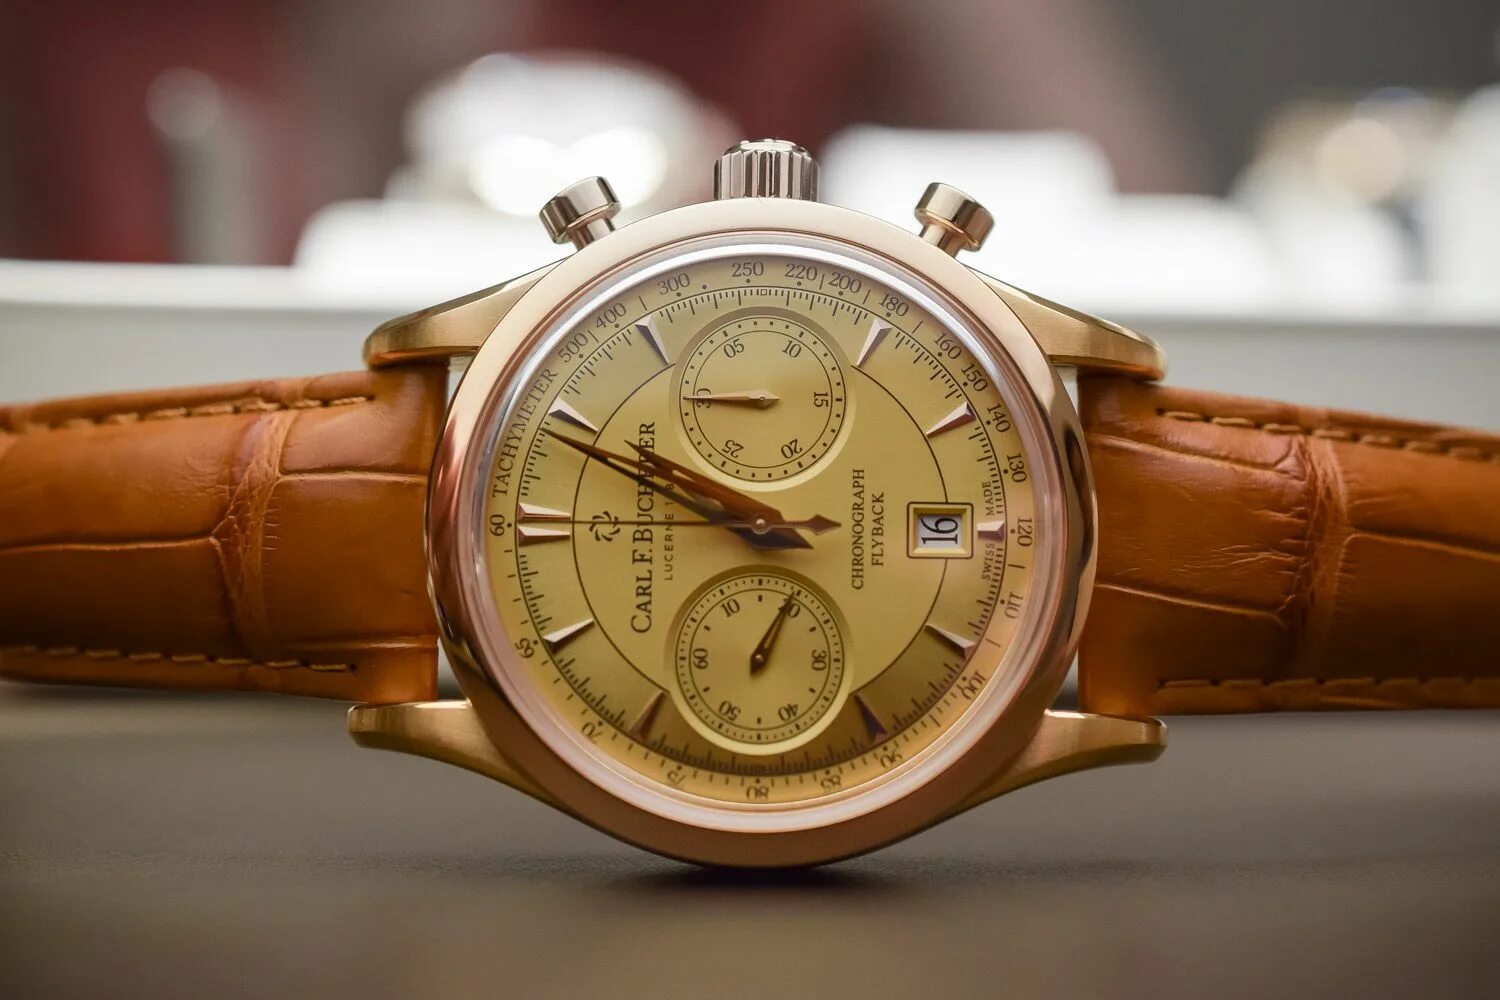 Мужские наручные часы Carl f. Bucherer. Часы Bucherer мужские золотые.